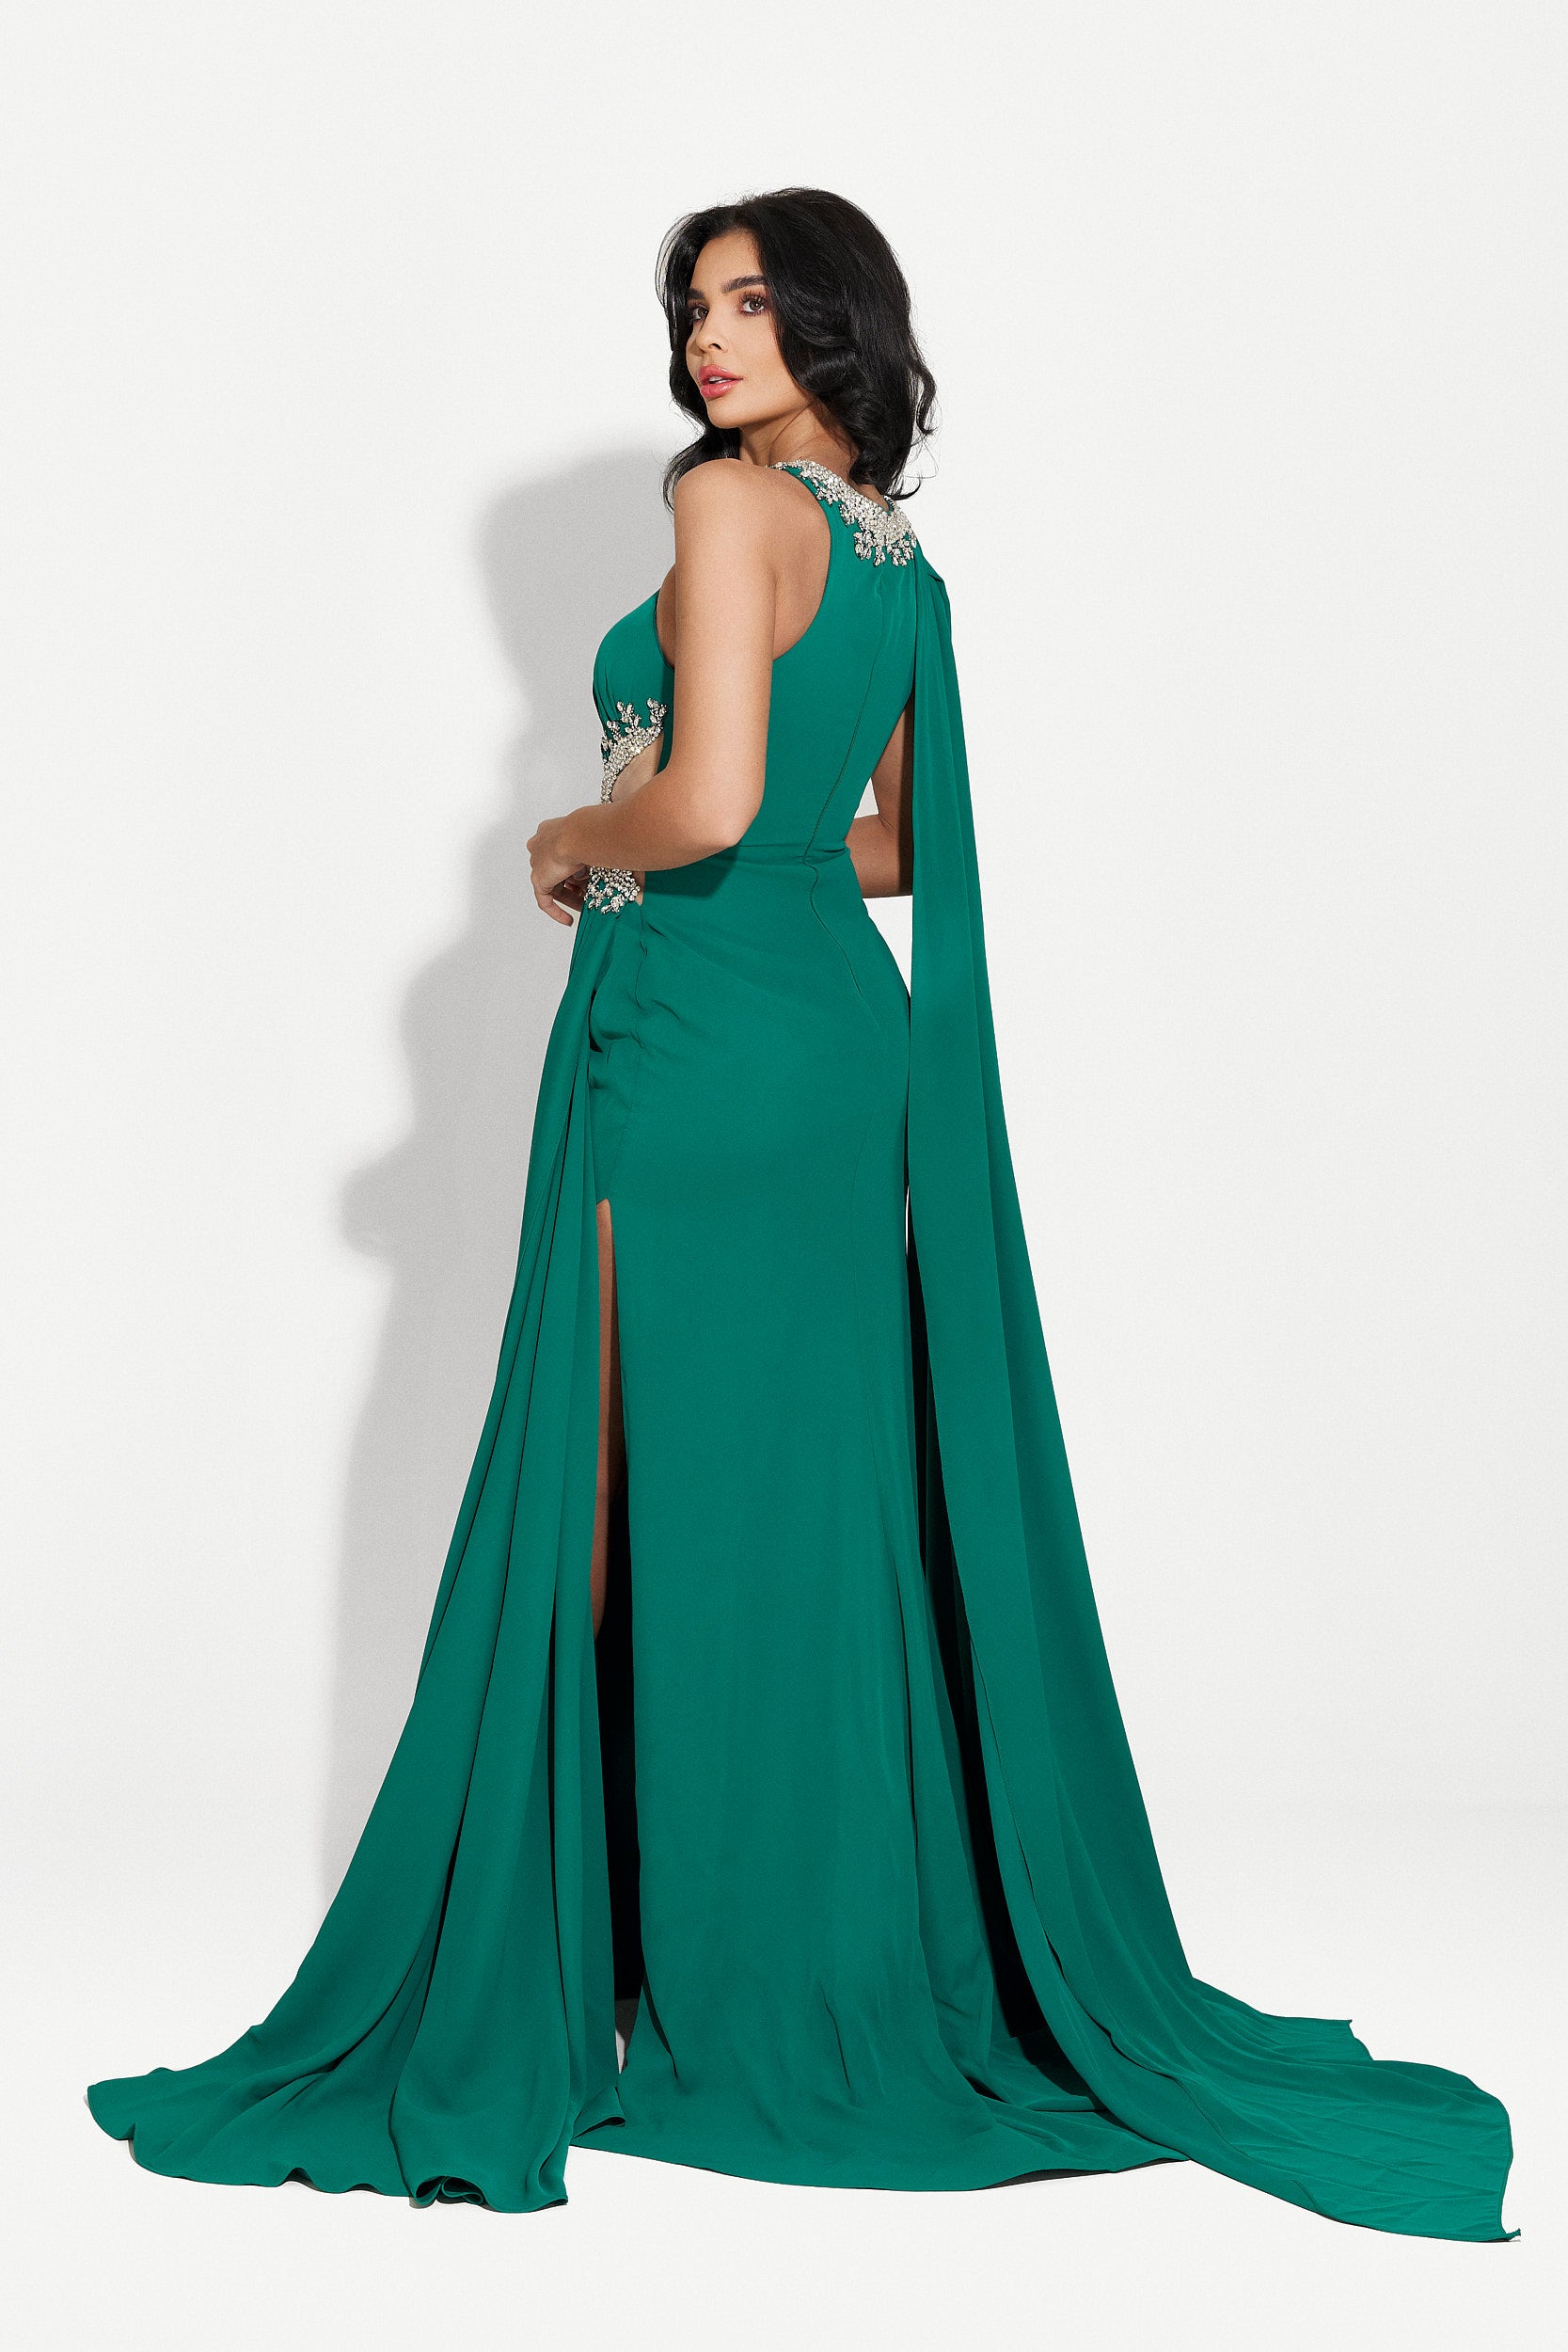 Alexea Bogas hosszú zöld női ruha